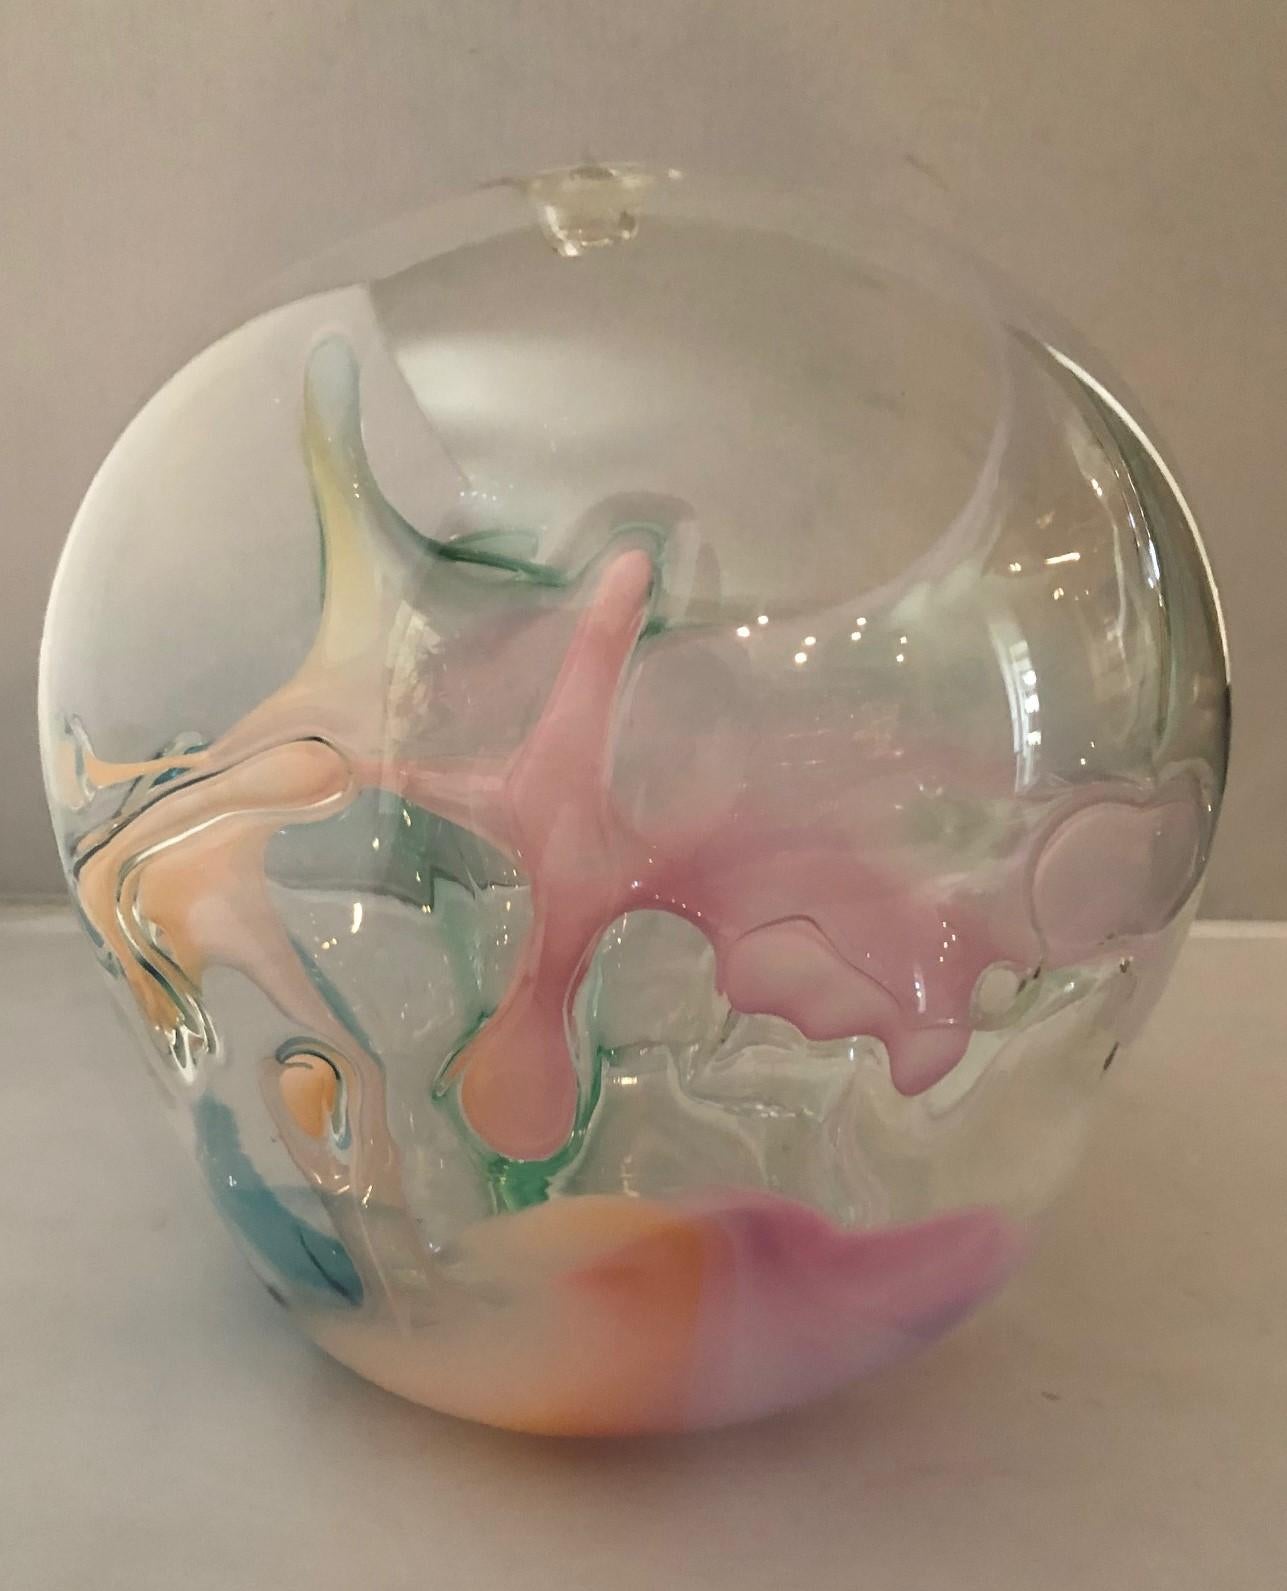 Grande sculpture en verre d'art multicolore de Peter Bramhall, vers 1983. Cette sculpture orbe en verre soufflé à la main présente des fils de verre internes de couleur rose, blanche et verte. La pièce mesure environ 10